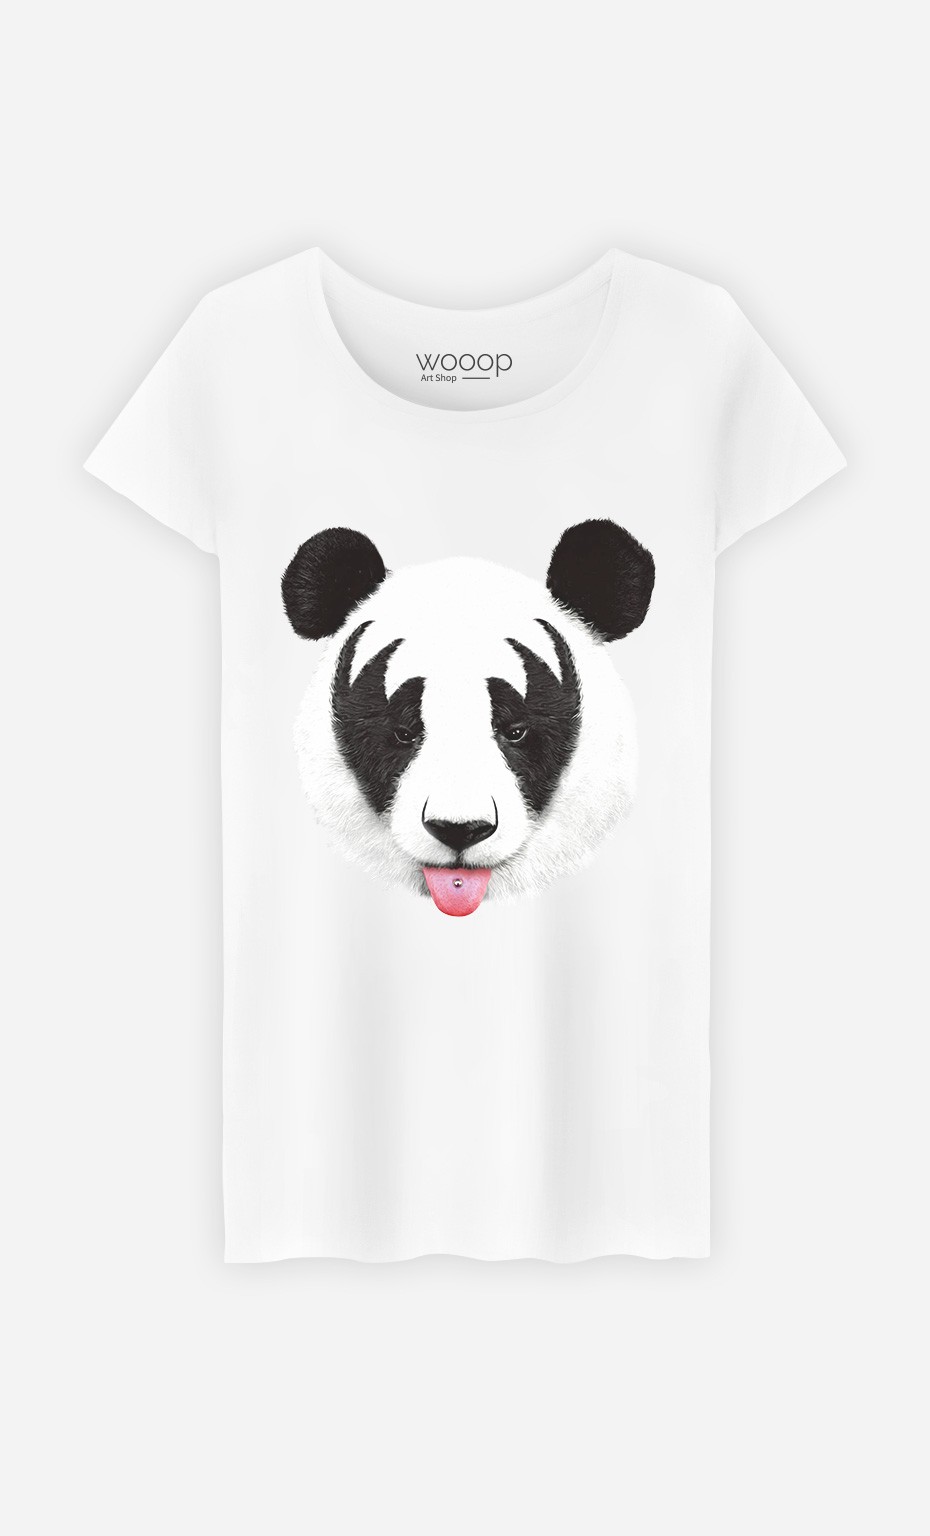 T-Shirt Panda Kiss